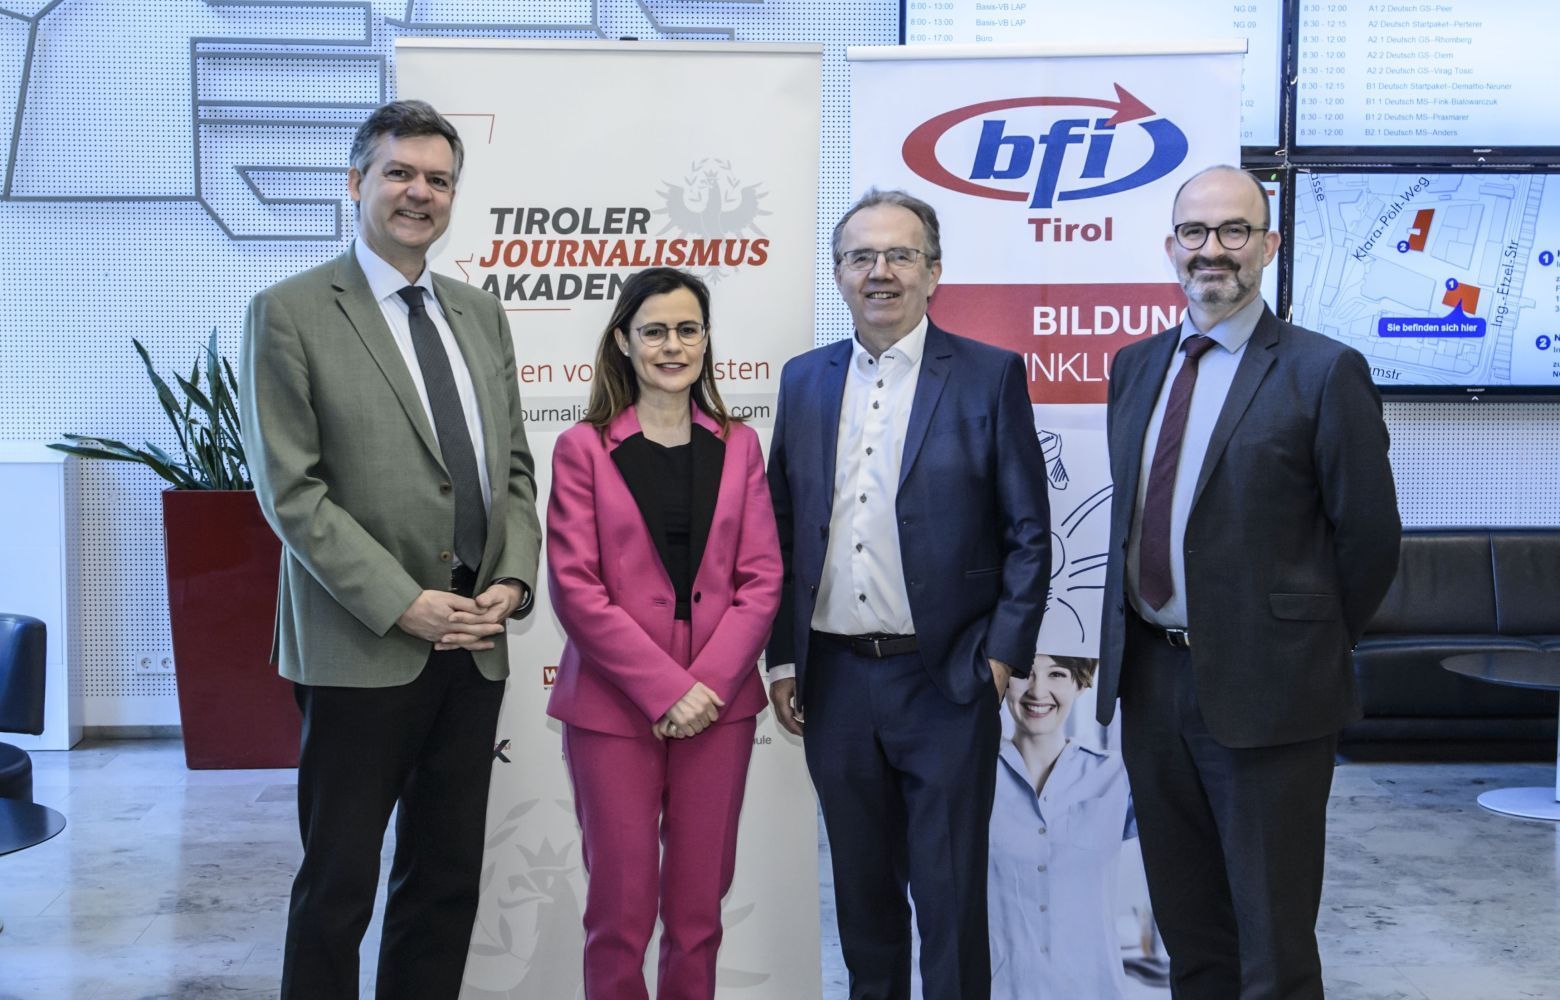 Tiroler Journalismusakademie mit Wechsel im Präsidium und neuem Bildungspartner BFI